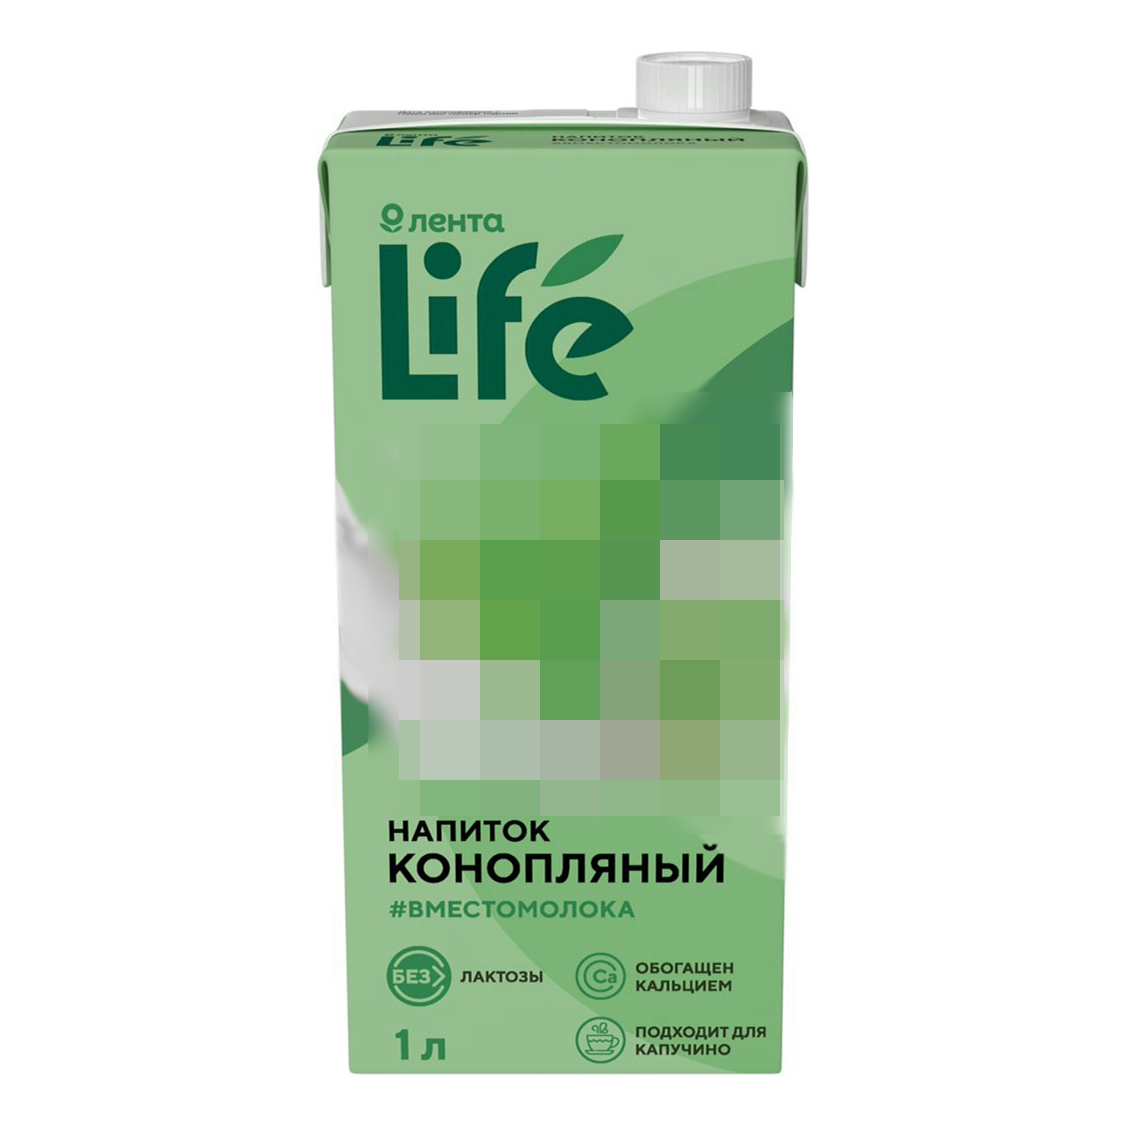 Напиток конопляный Лента Life 3,5% 1 л